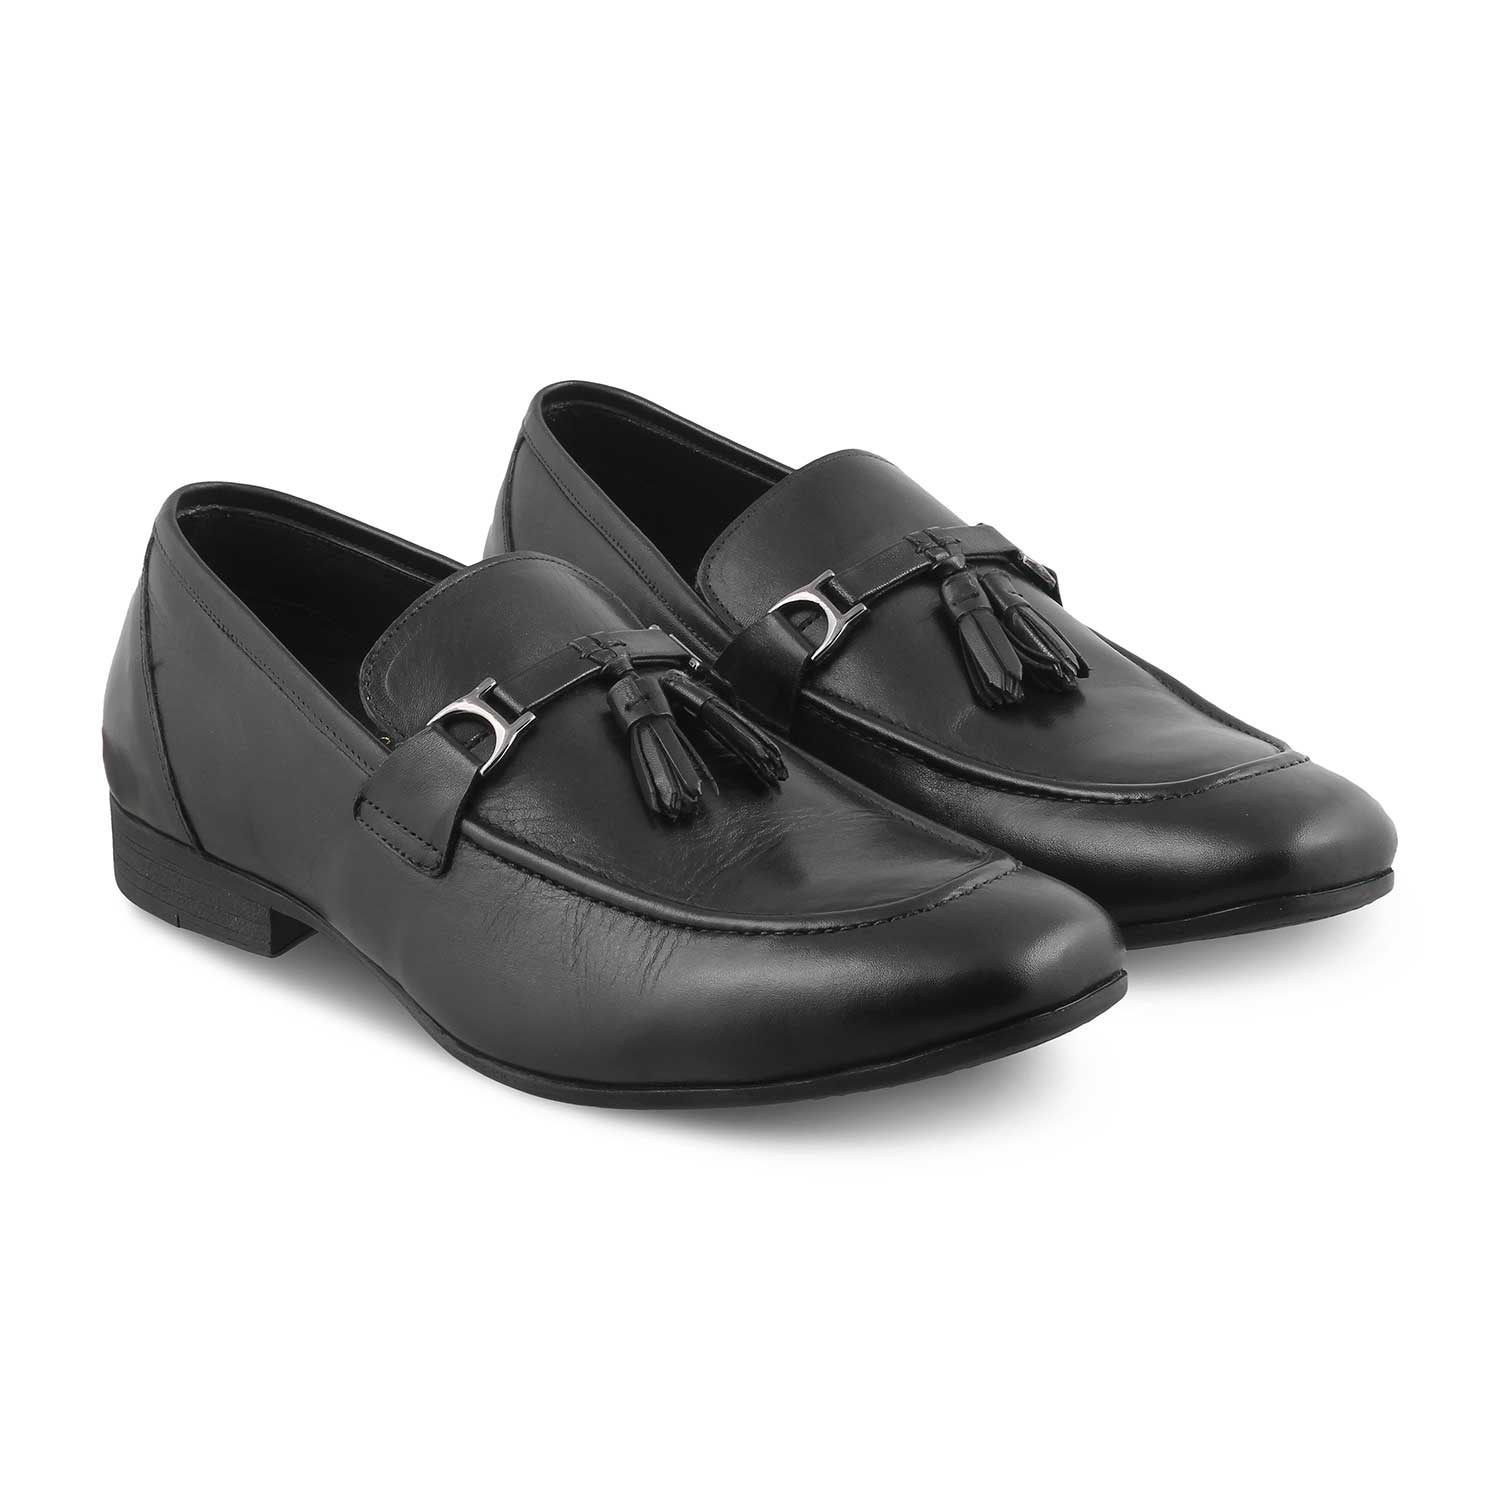 Tussle Black Men's Leather Tassel Loafers Online at Tresmode.com